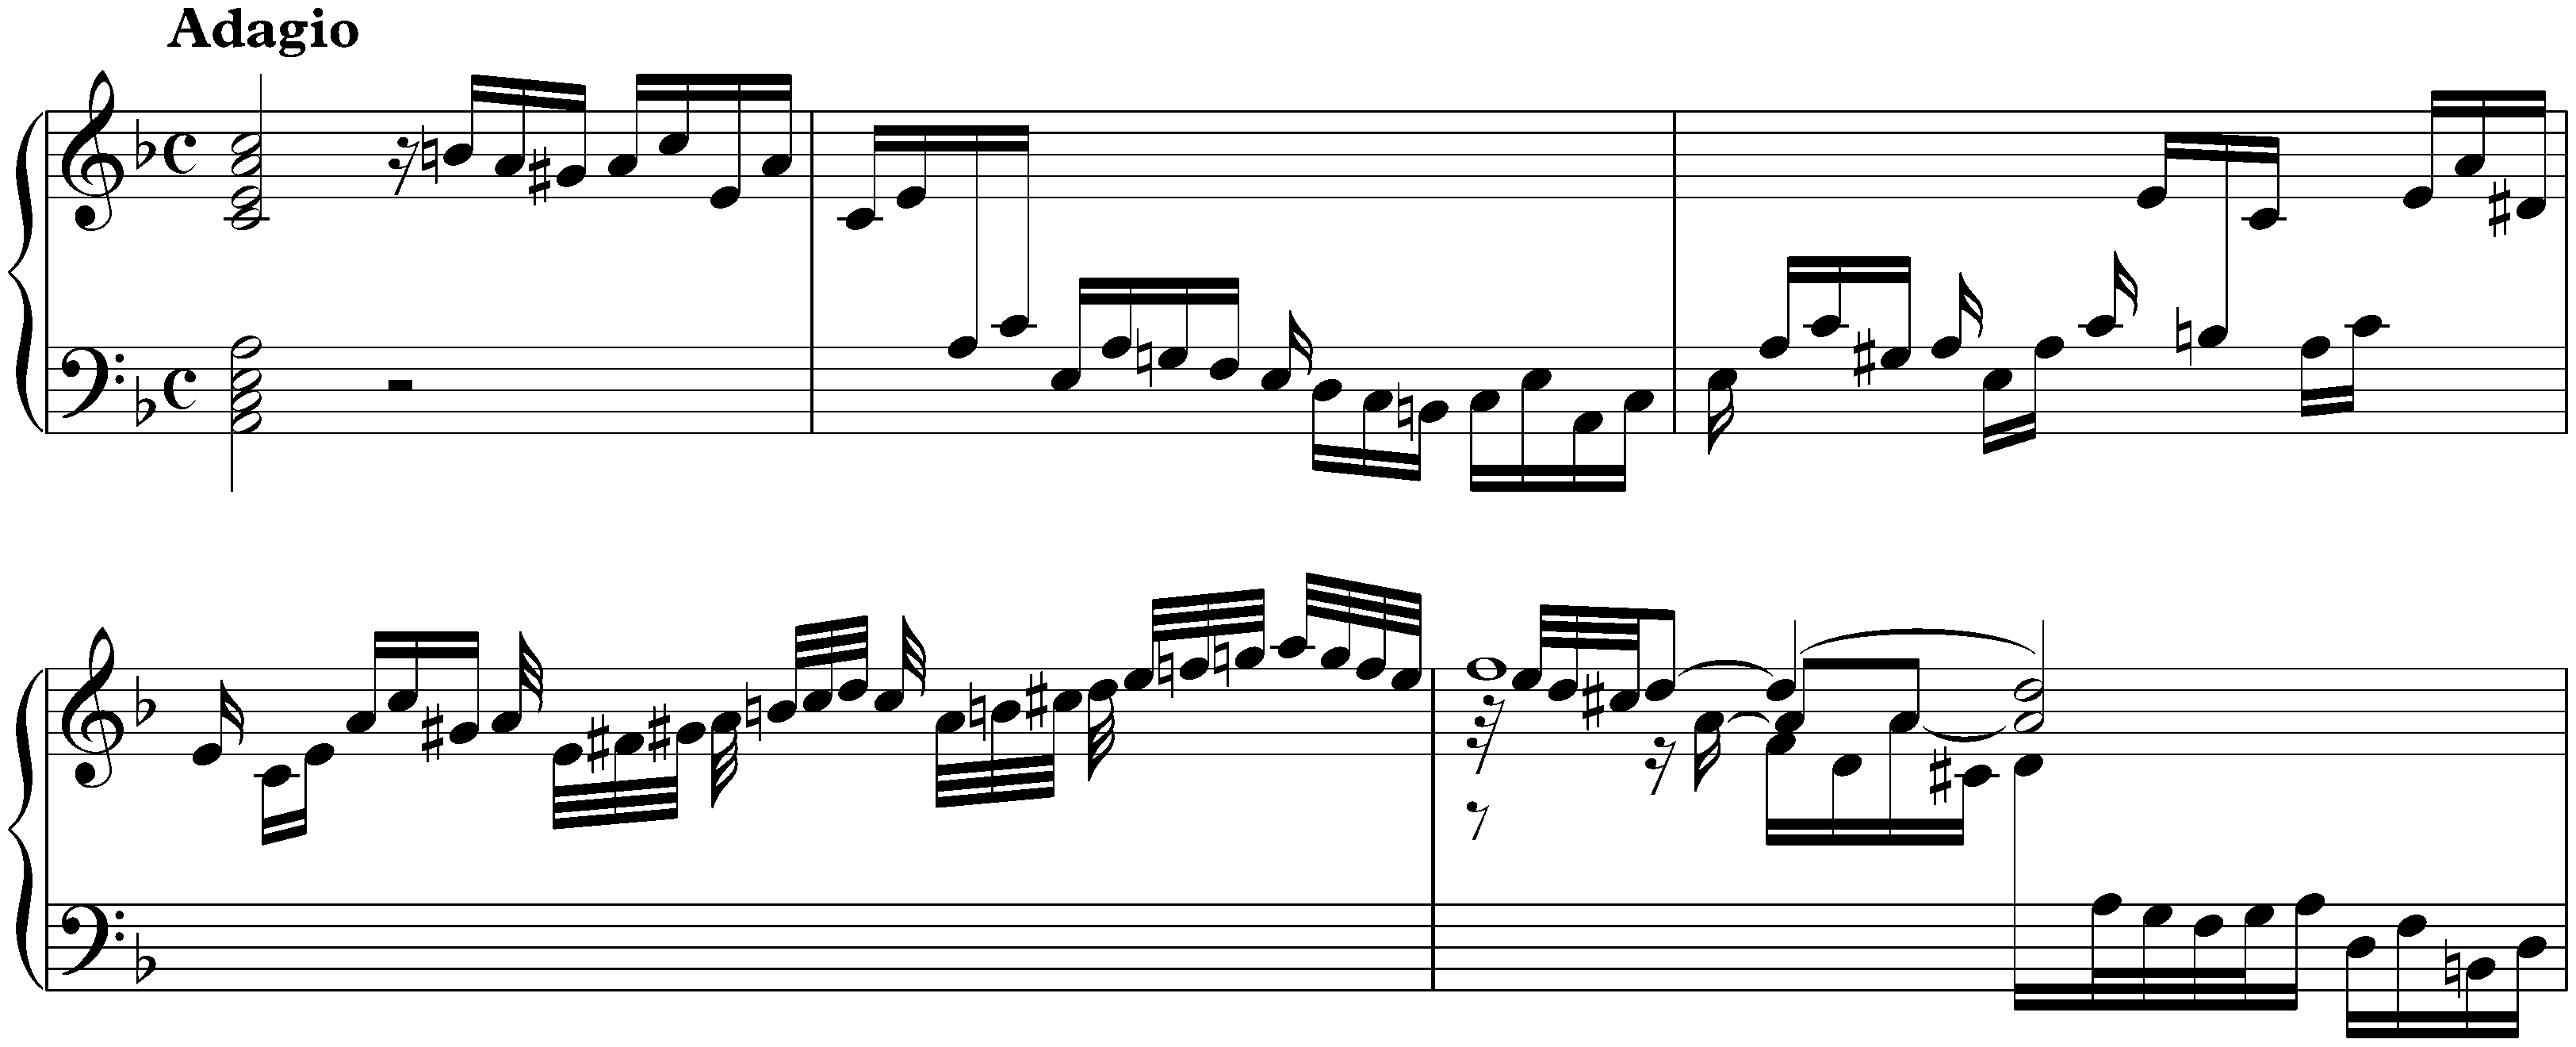 Prelude in A minor, BWV 923a